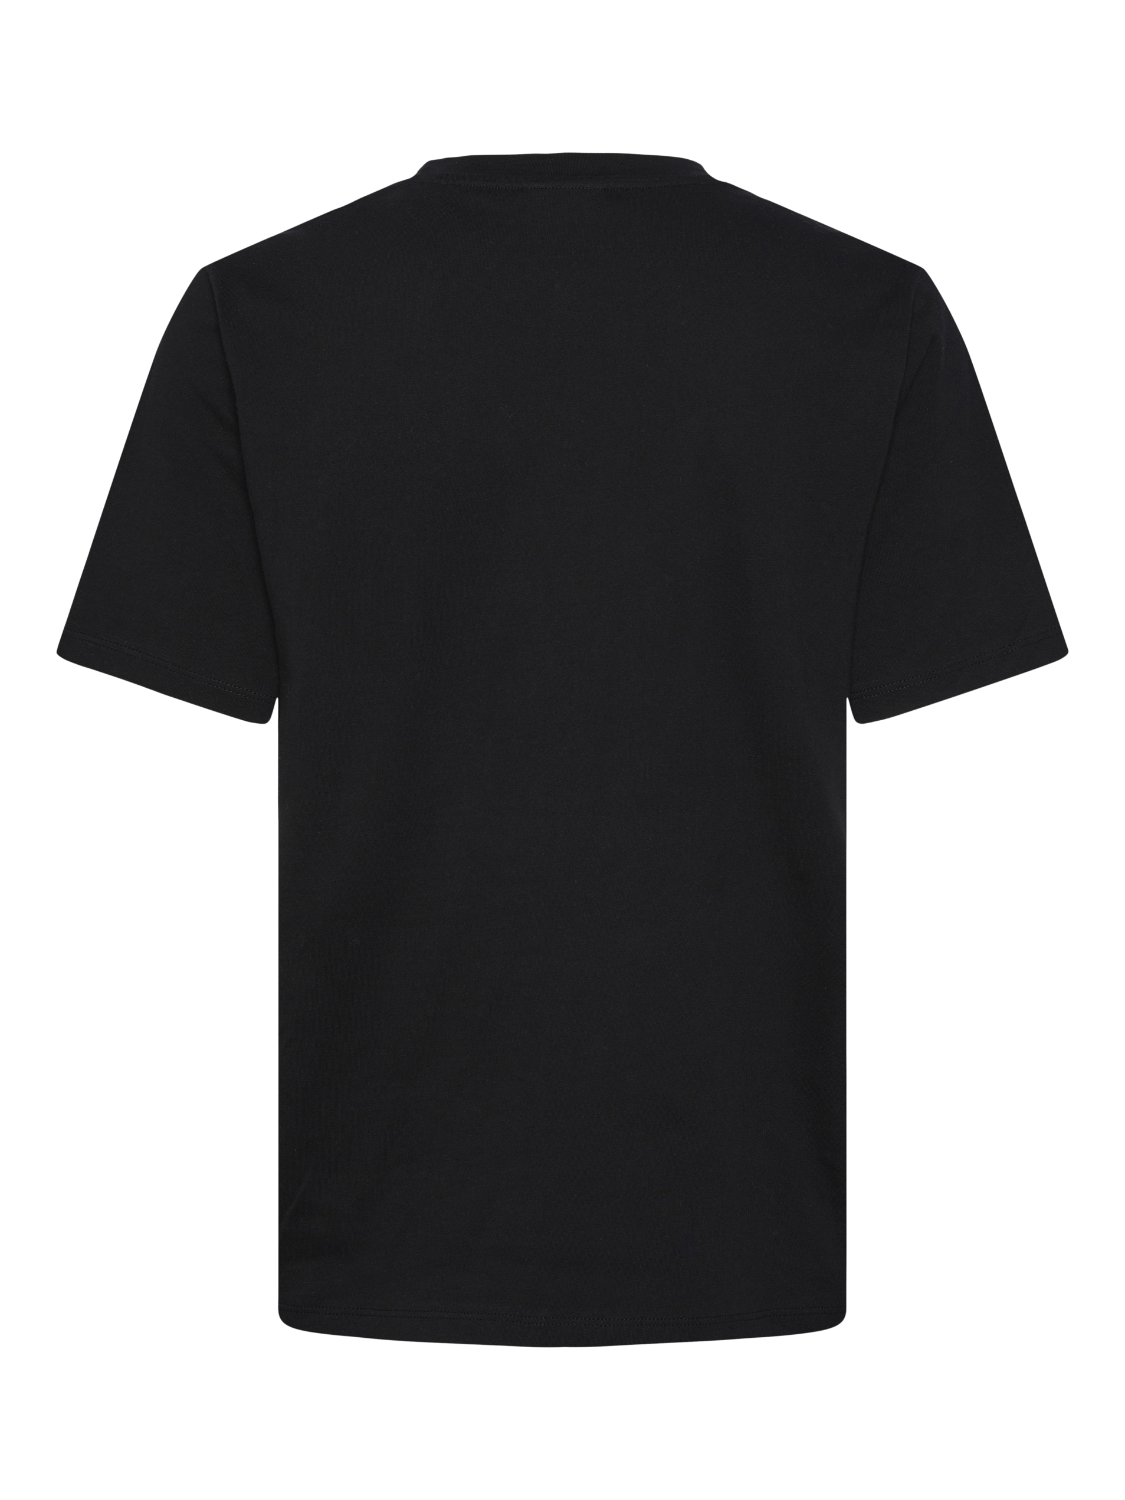 PCSRIA T-Shirt - Black